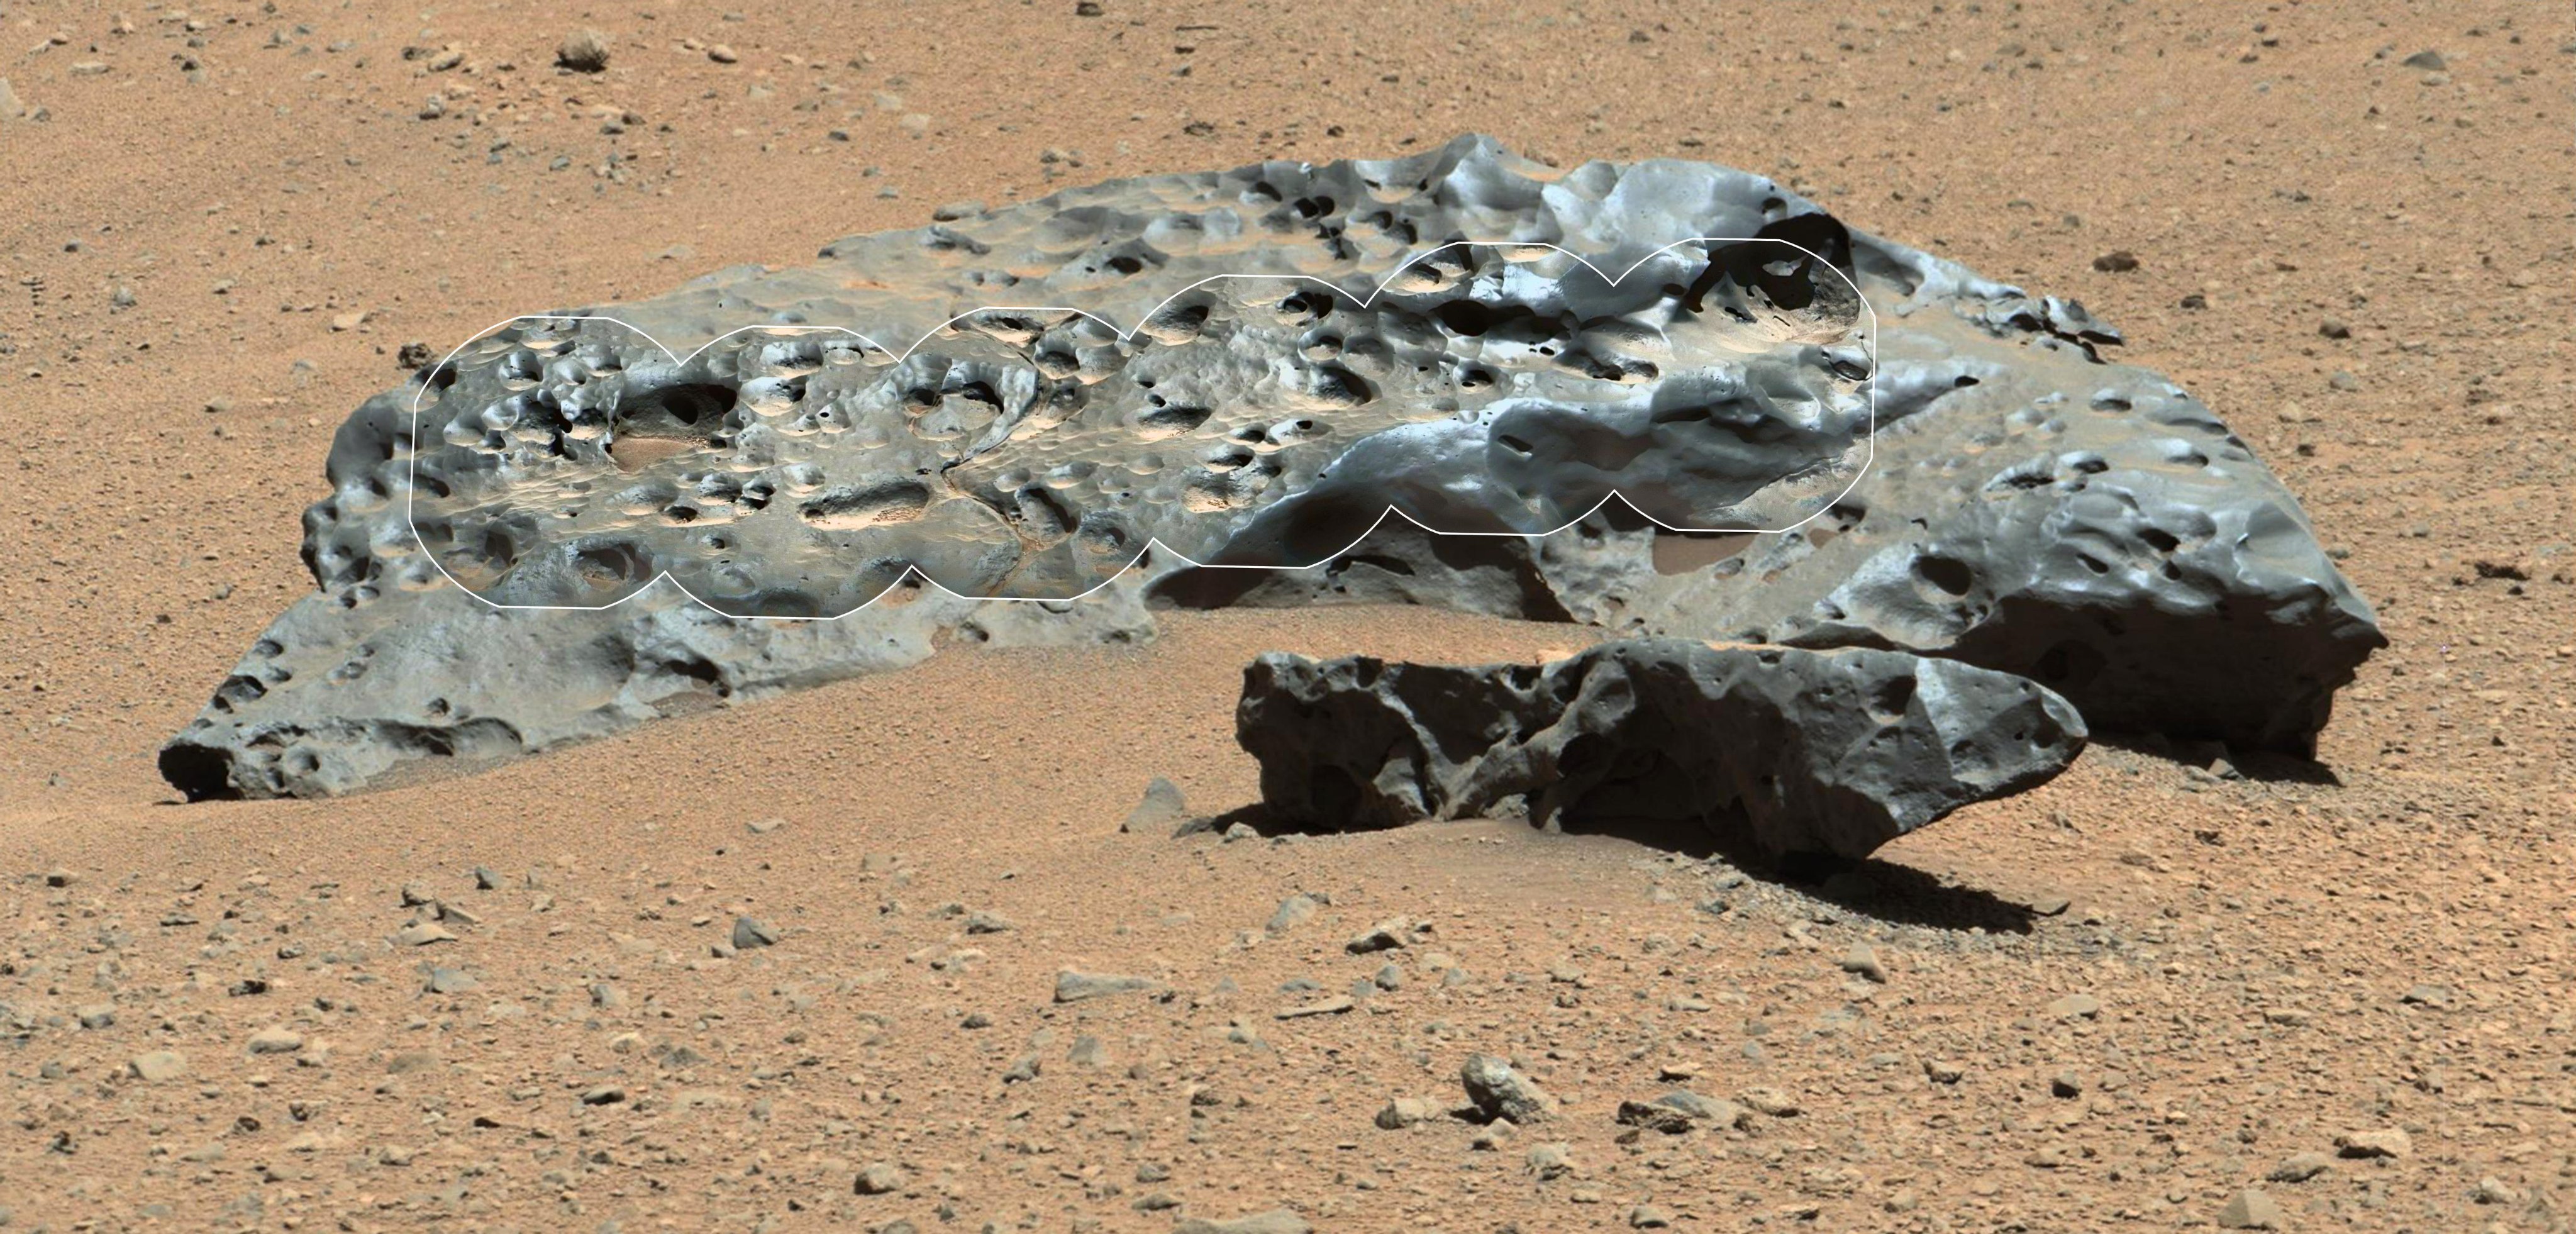 Łazik Curiosity znajduje na Marsie obce kakao